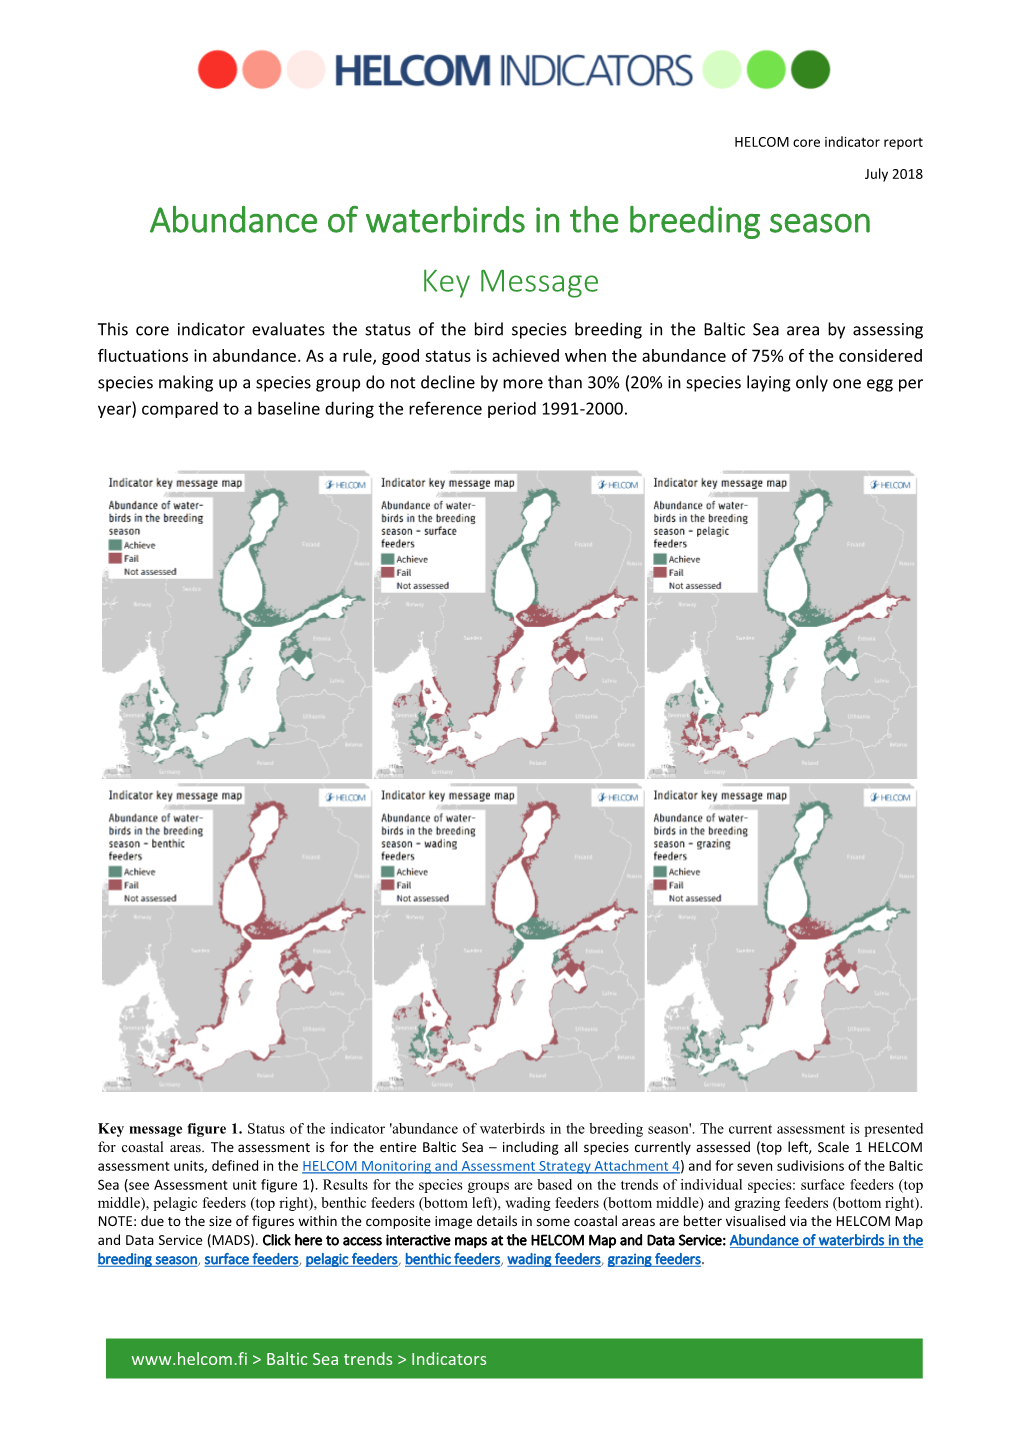 Abundance of Waterbirds in the Breeding Season Key Message